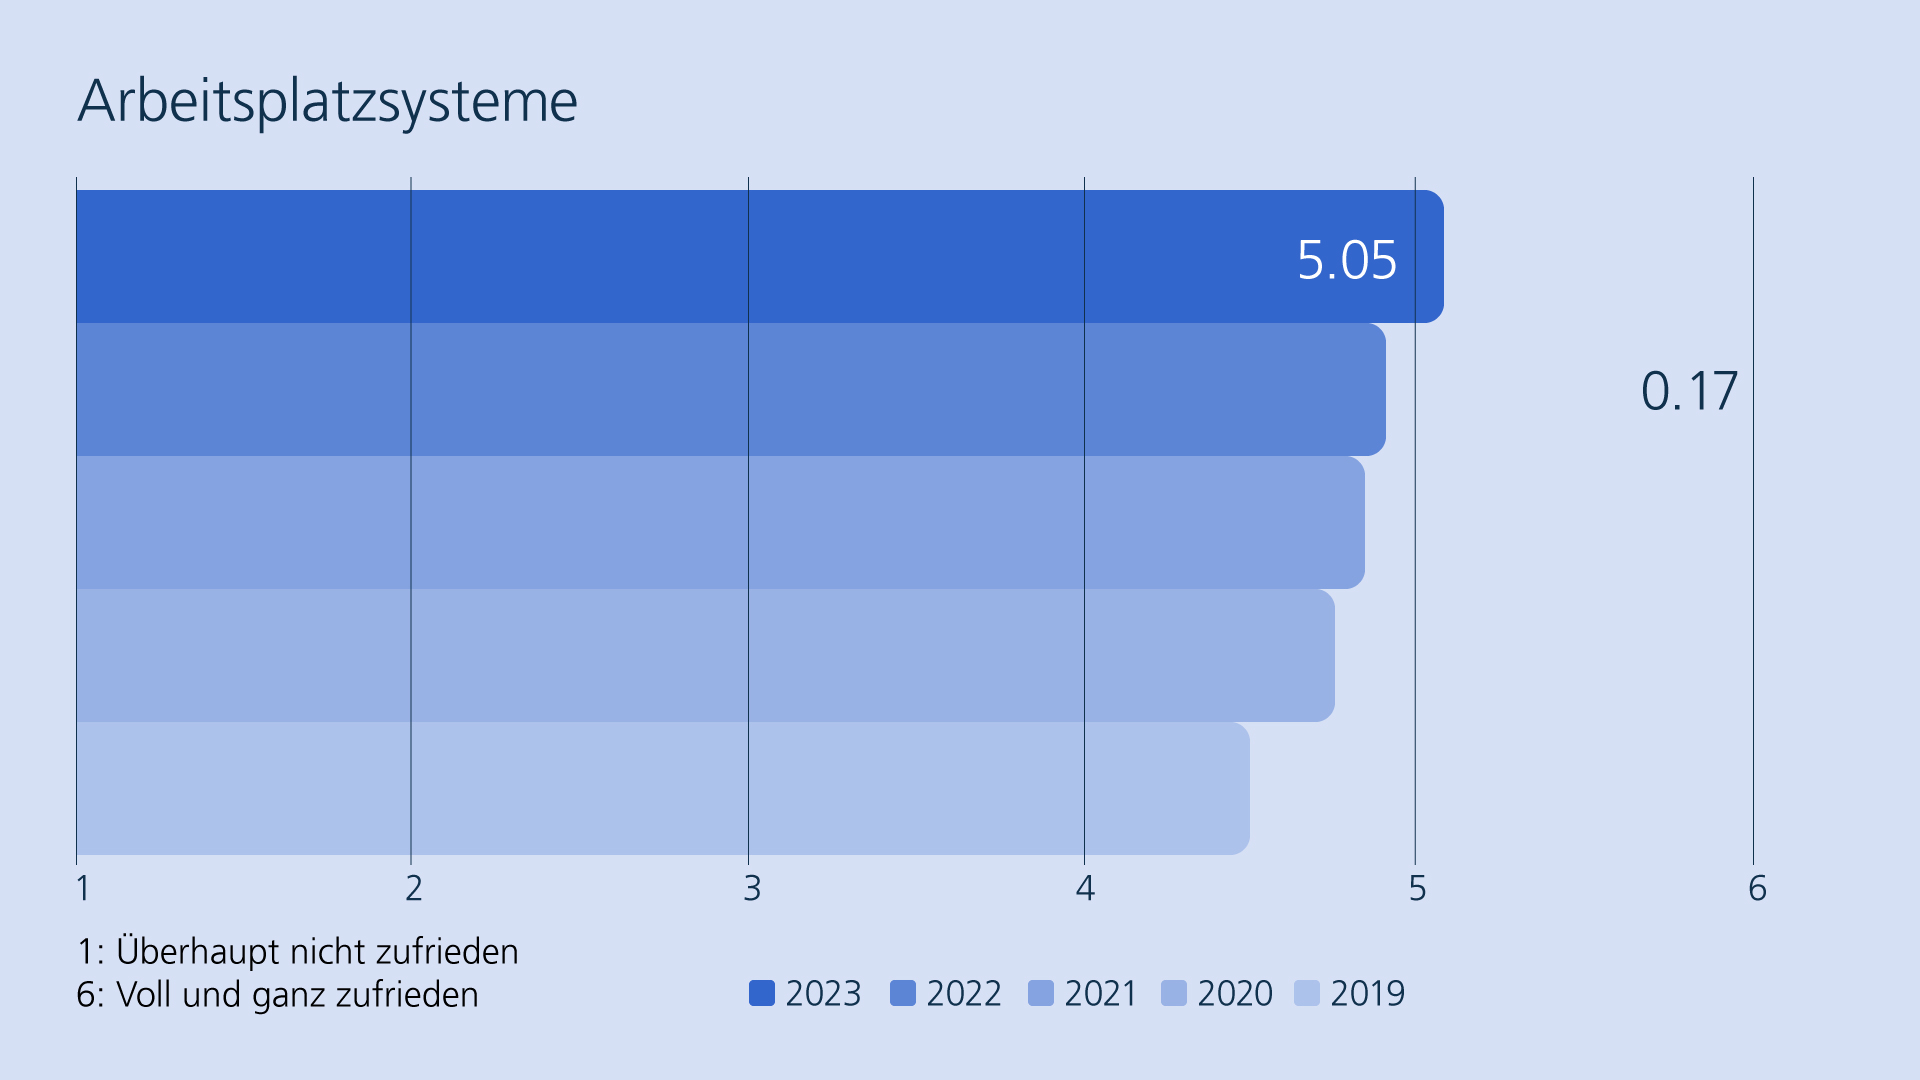 Balkendiagramm zu der Zufriedenheit der Mitarbeitenden der Bundesverwaltung von 2019 bis 2023 mit den Arbeitsplatzsystemen (2023: 5.05). Anstieg von 2022 zu 2023 um 0.17. 1: Überhaupt nicht zufrieden, 6: Voll und ganz zufrieden.